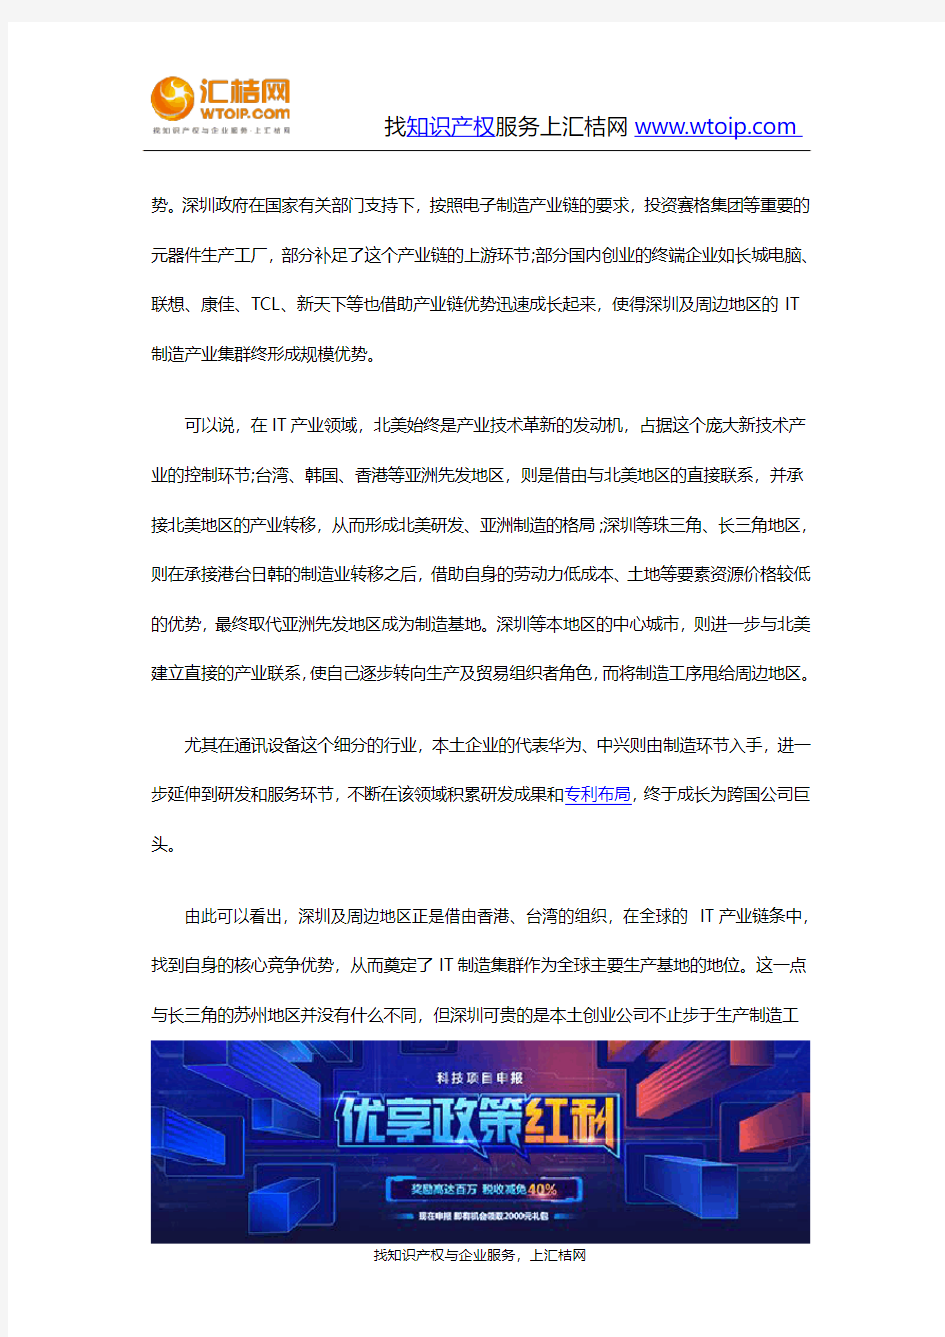 深圳发展高新技术产业的主要经验(III)